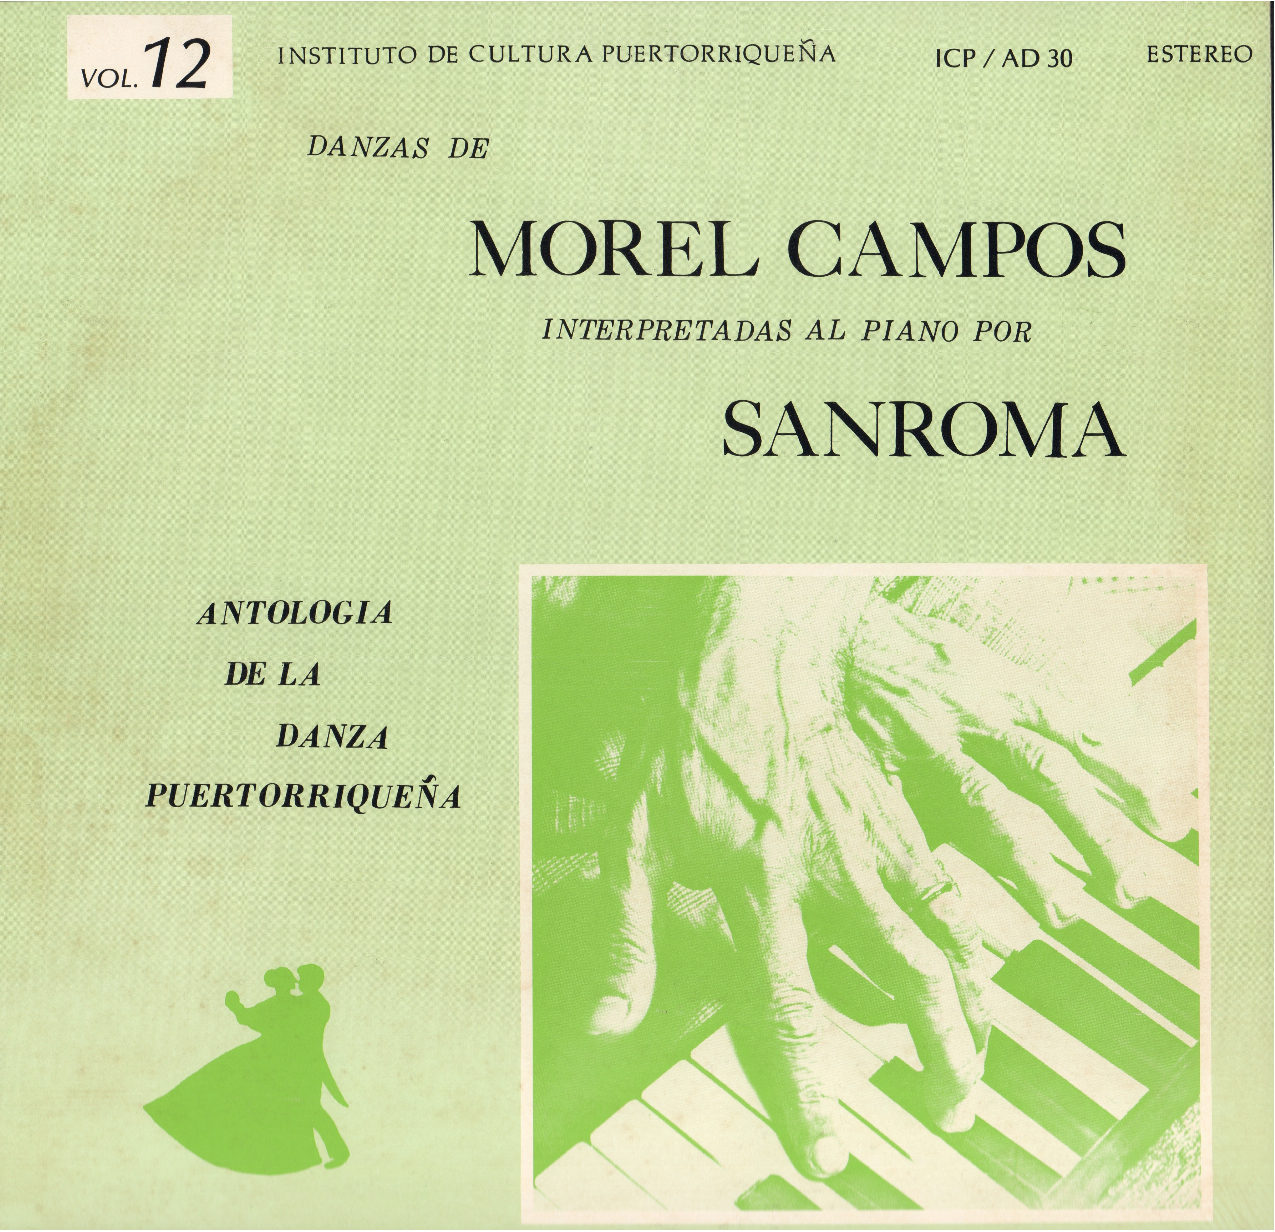 Danzas de Morel Campos Vol. 12